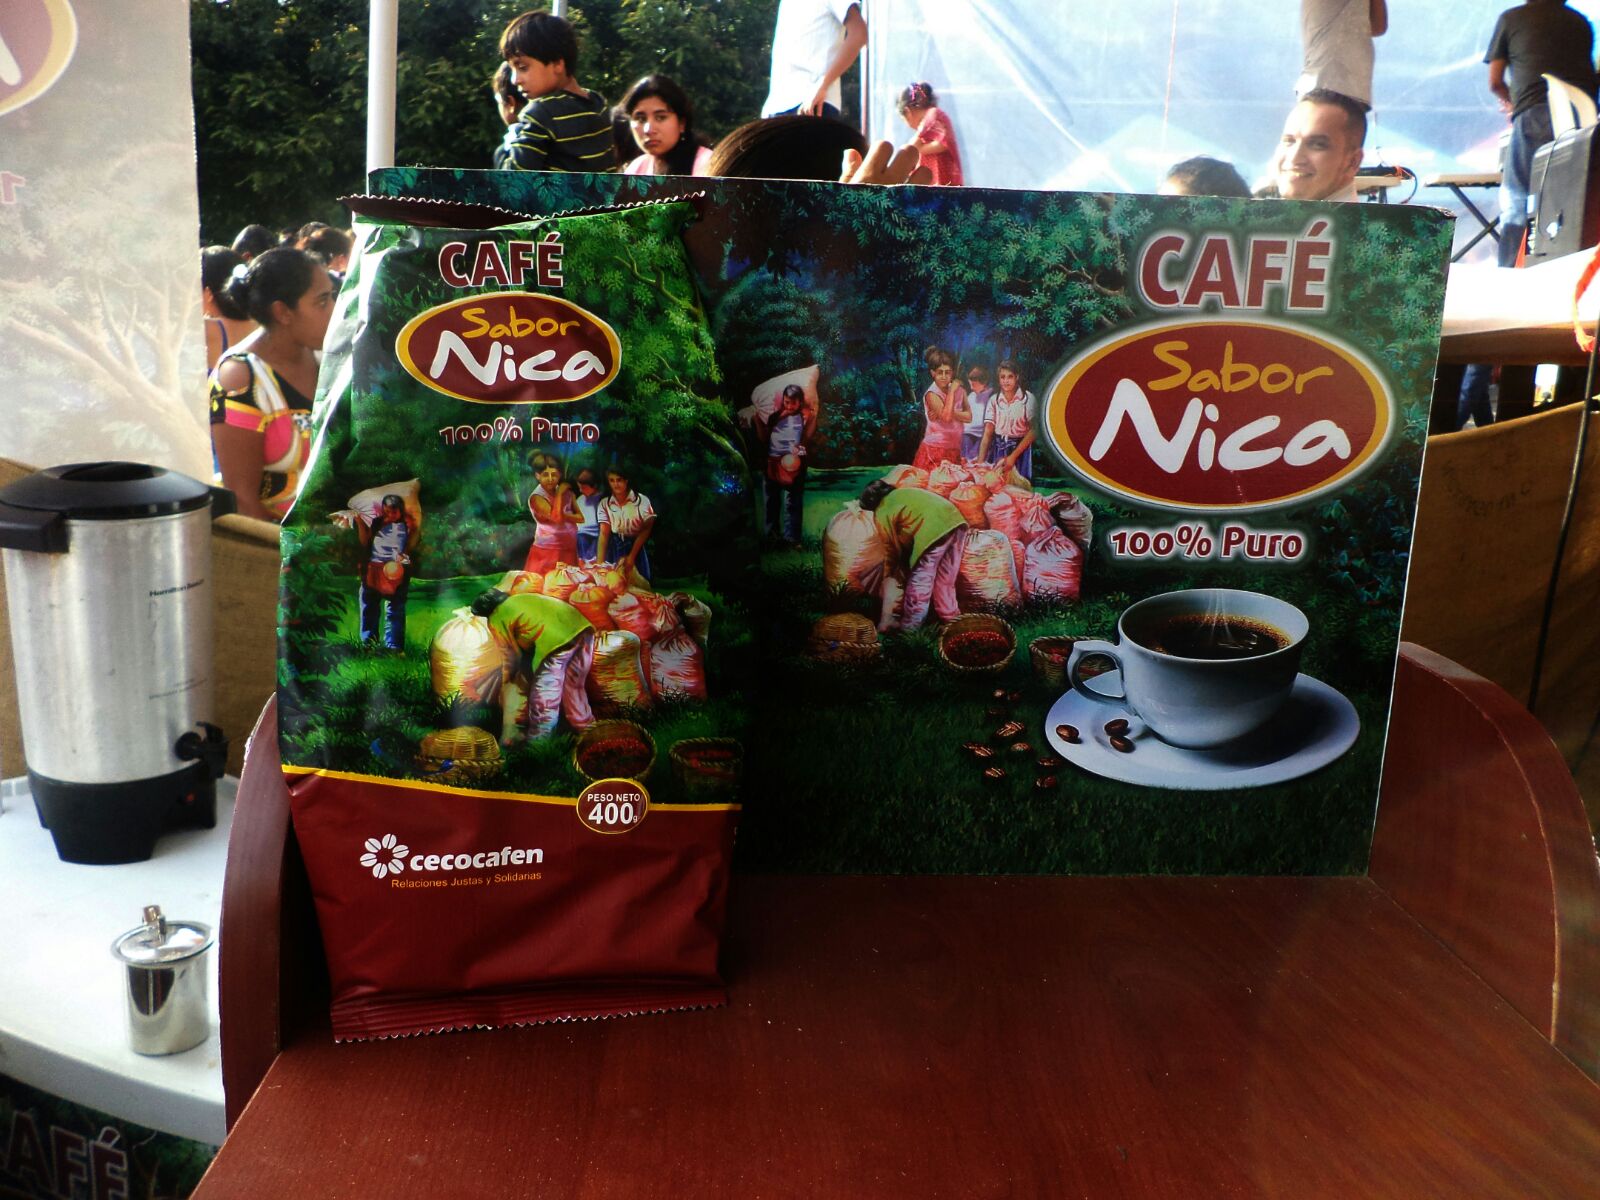 Café Sabor Nica